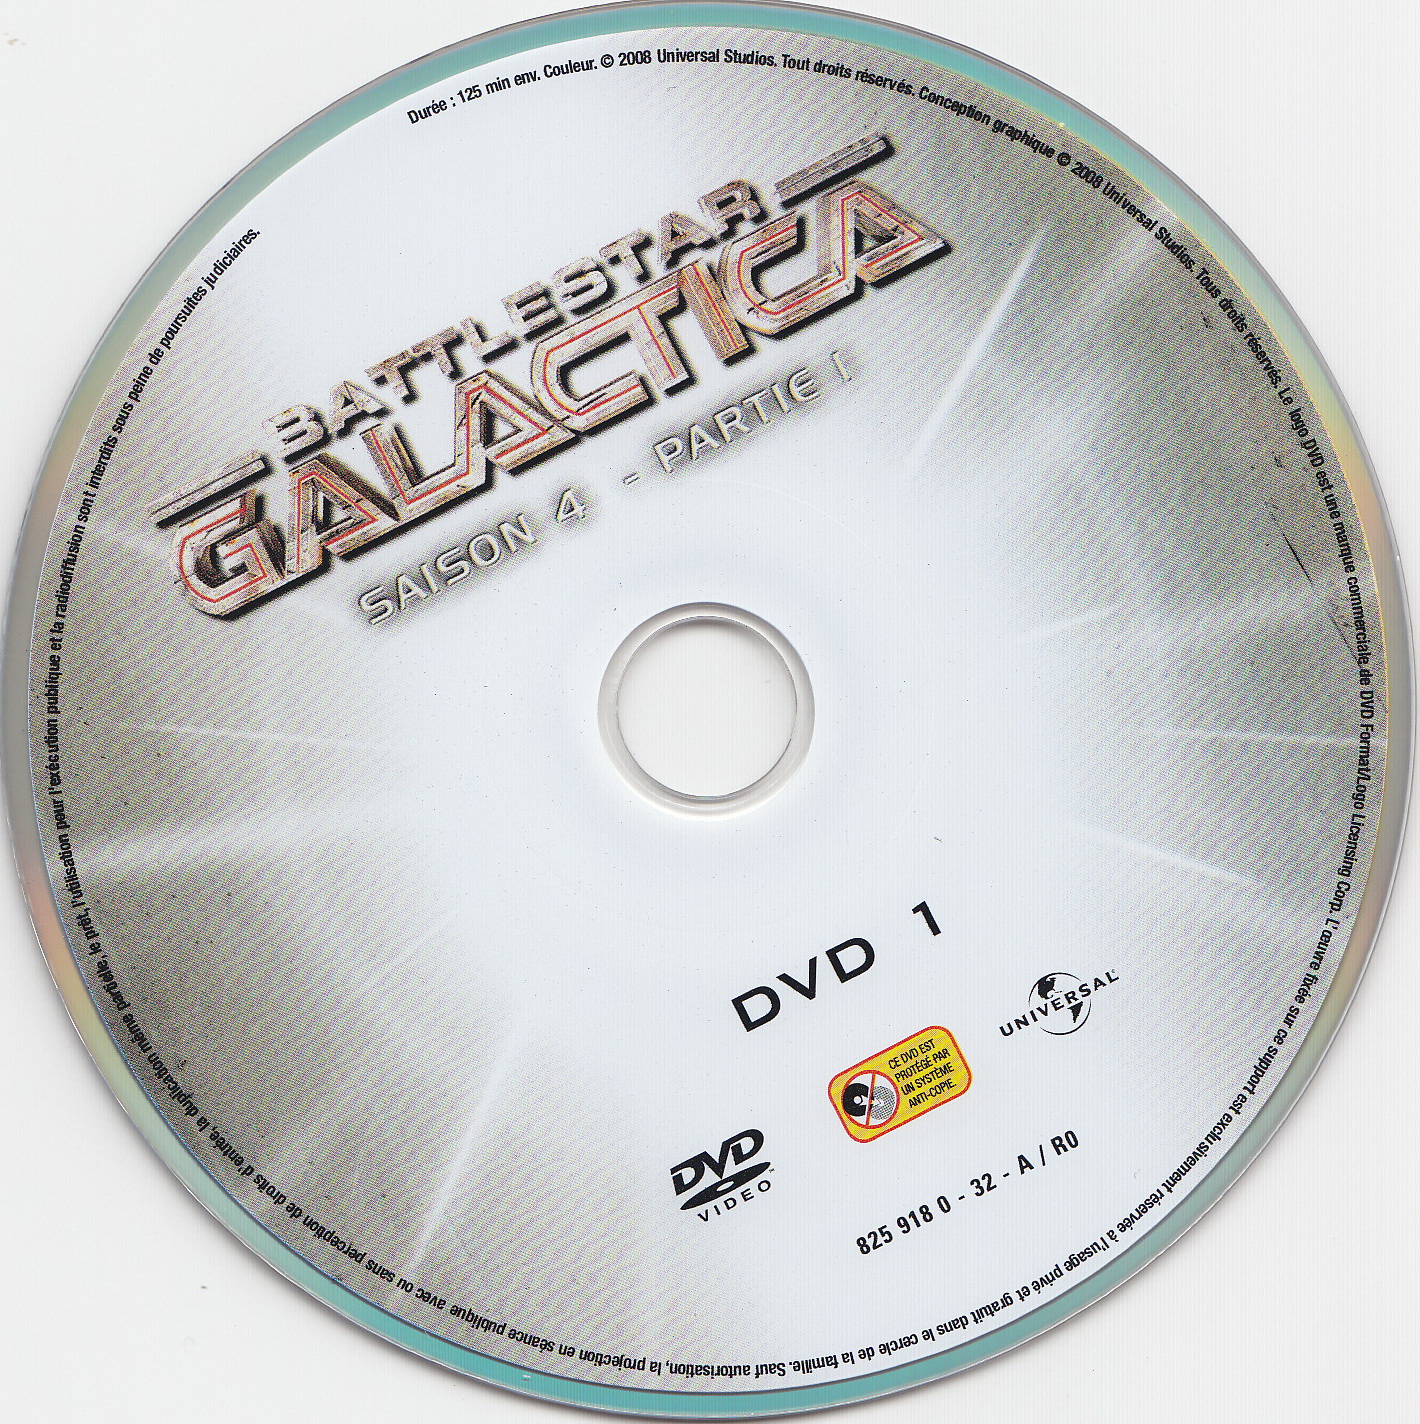 Battlestar Galactica Saison 4 partie 1 DVD 1